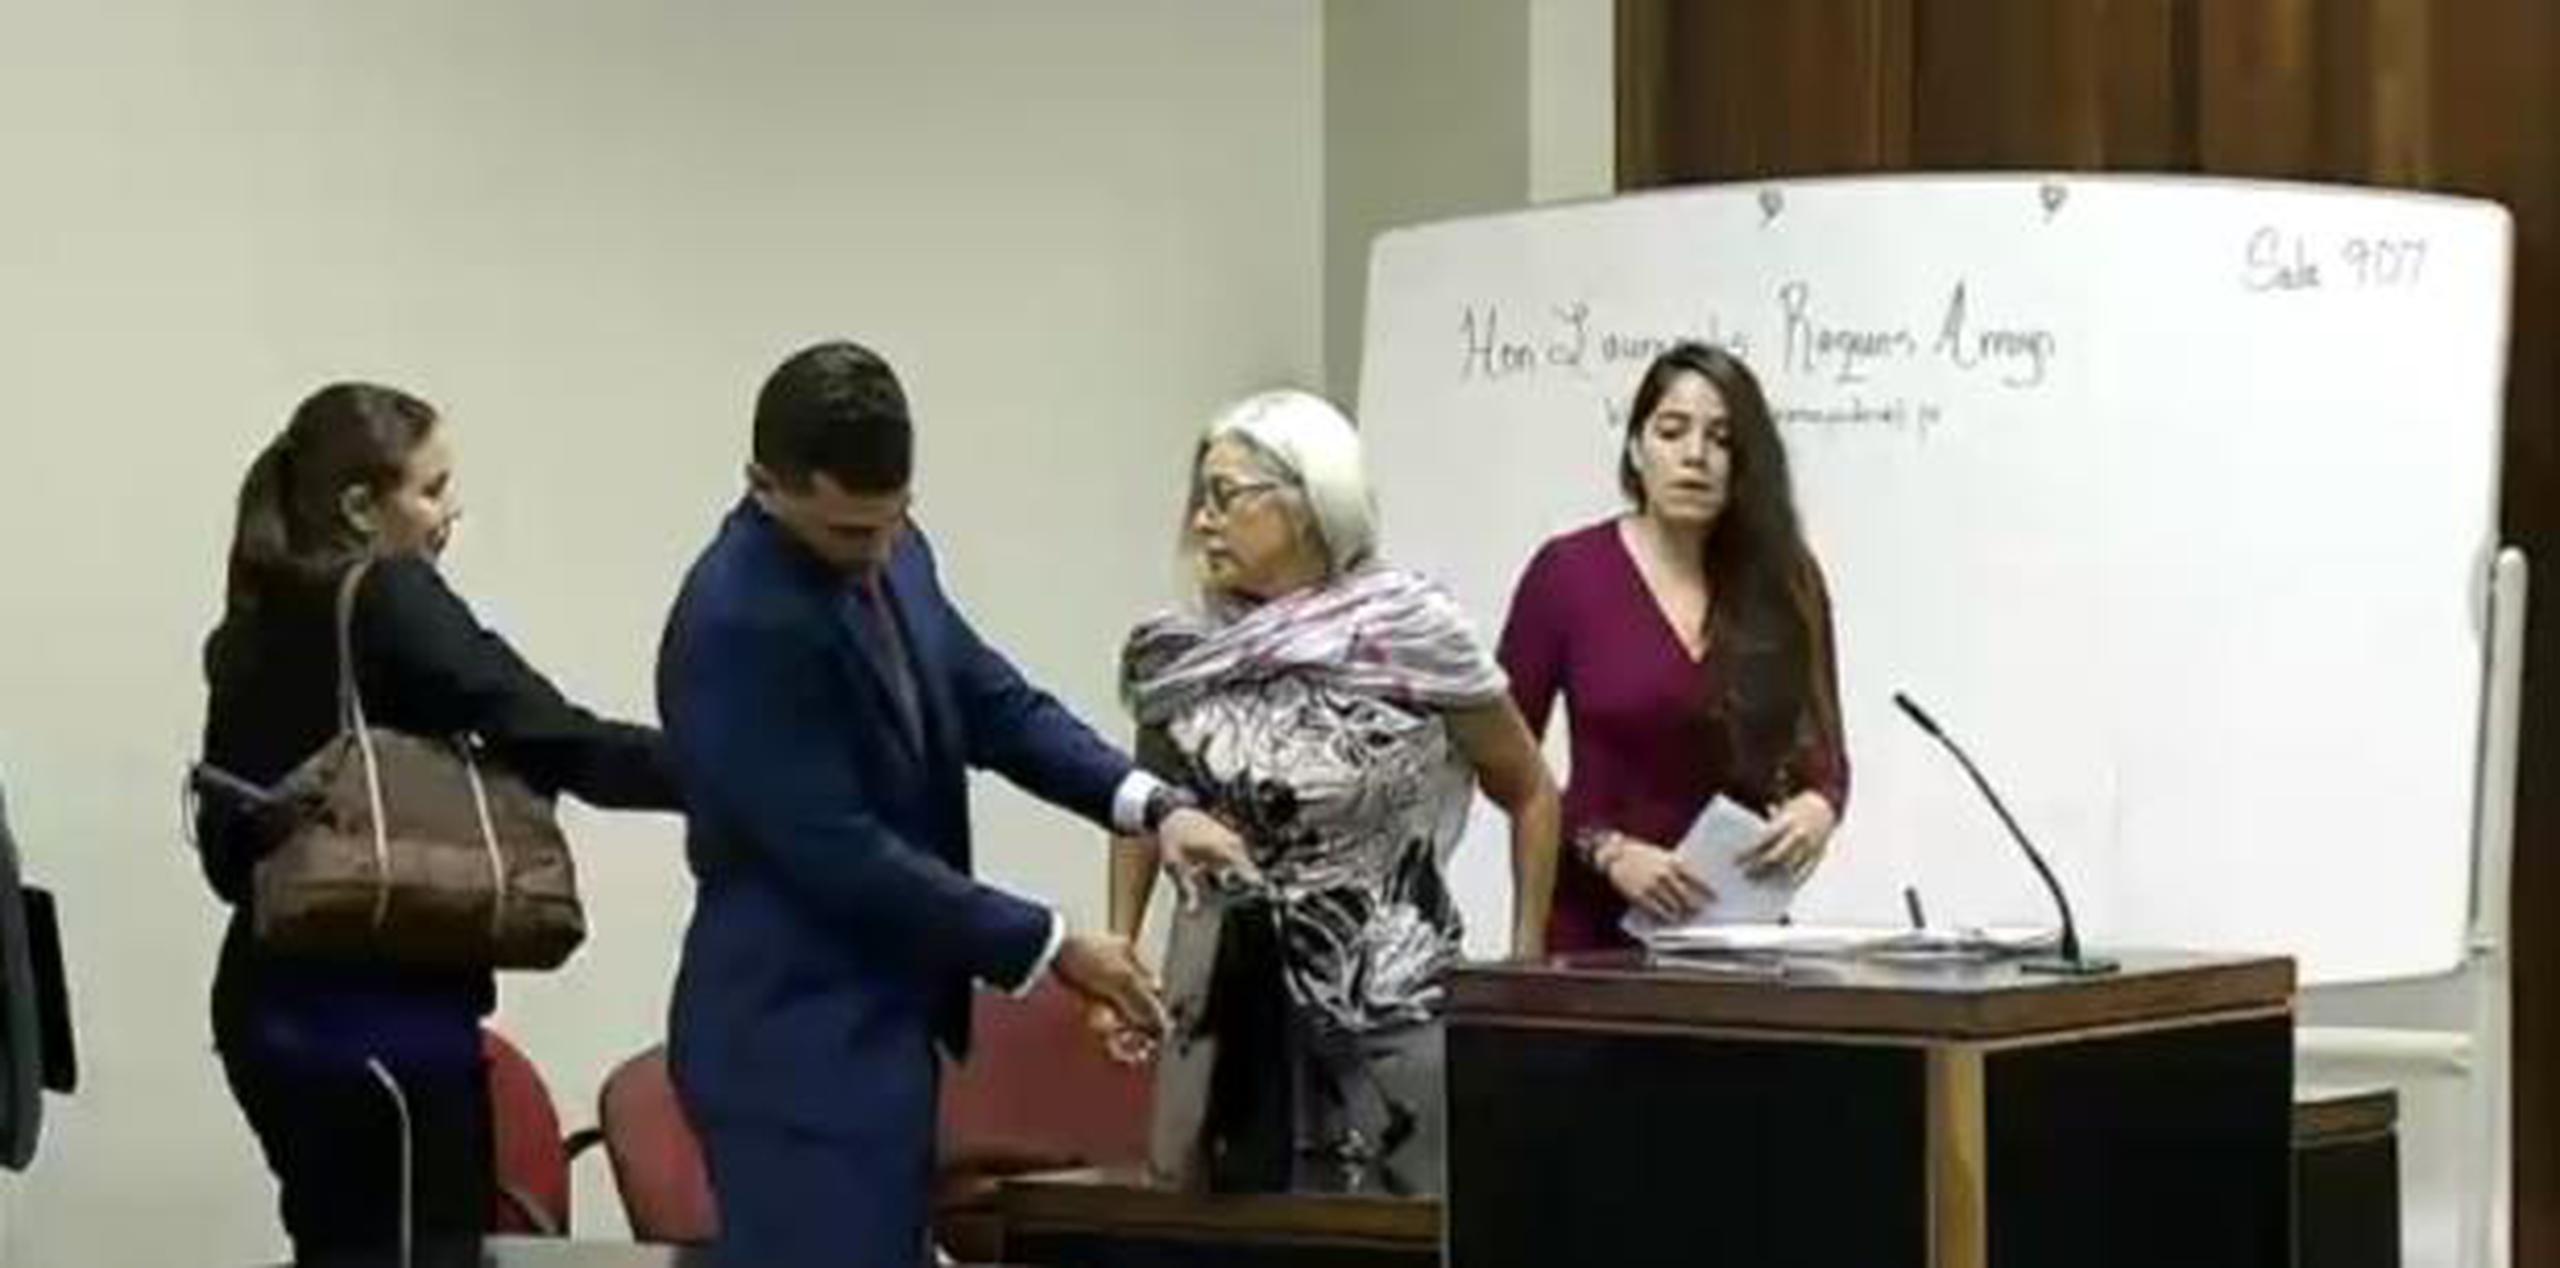 Roques Arroyo añadió que quedaría pendiente que en su momento se le notifique a la parte demandante, la madre del occiso, al centro en la imagen, cuándo culminaría la investigación. (Captura)